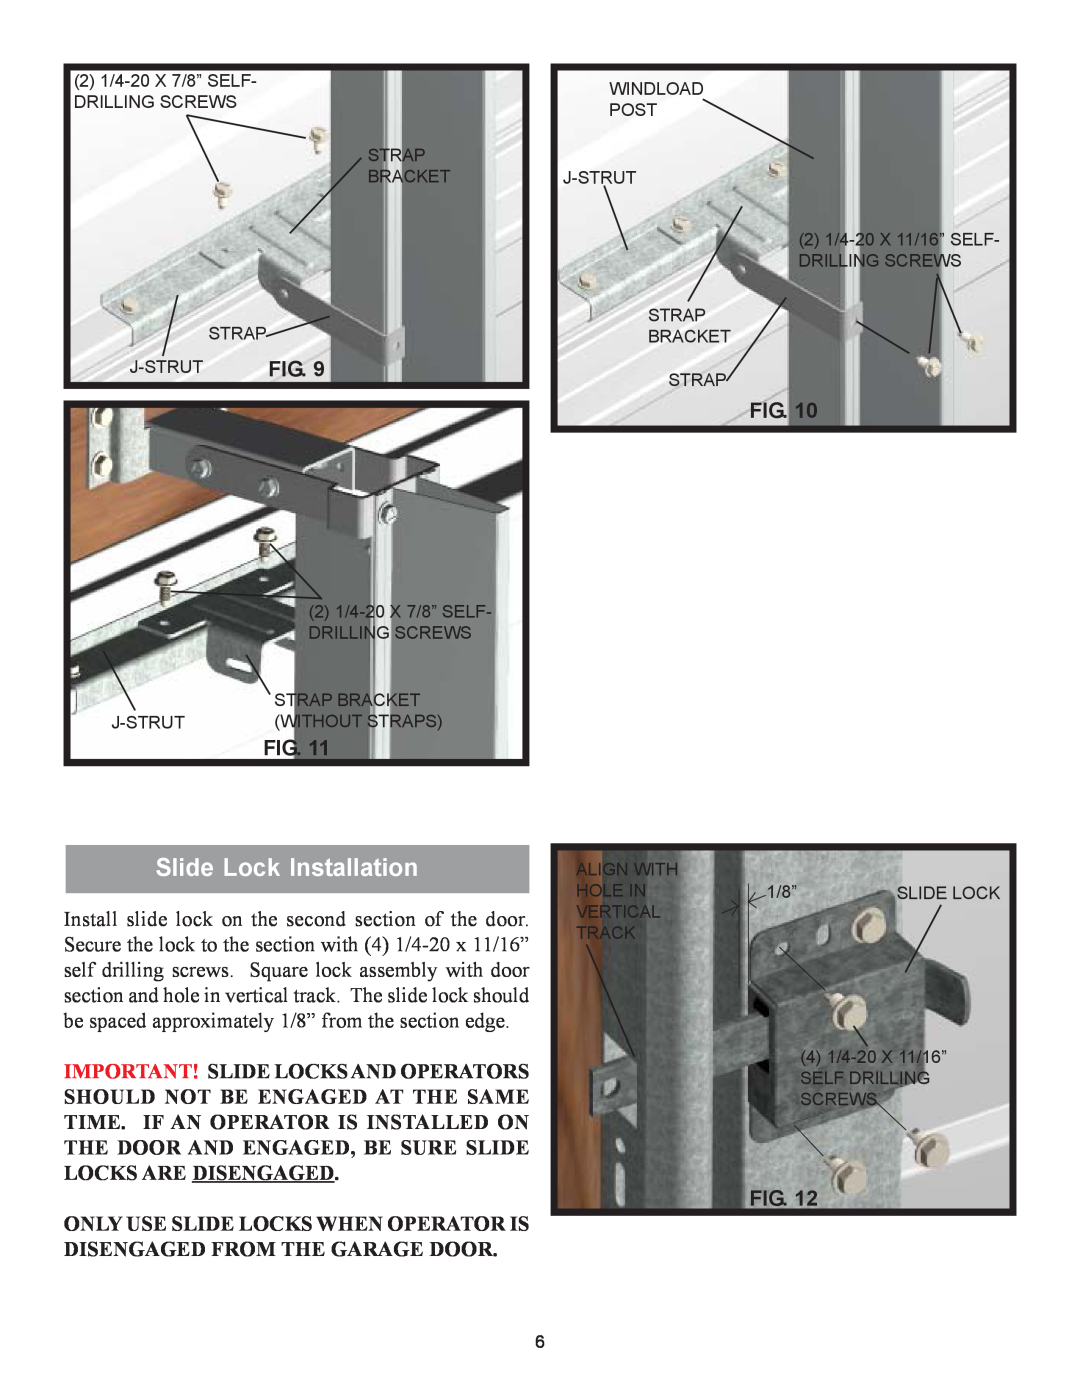 Wayne-Dalton 9100 installation instructions Slide Lock Installation 